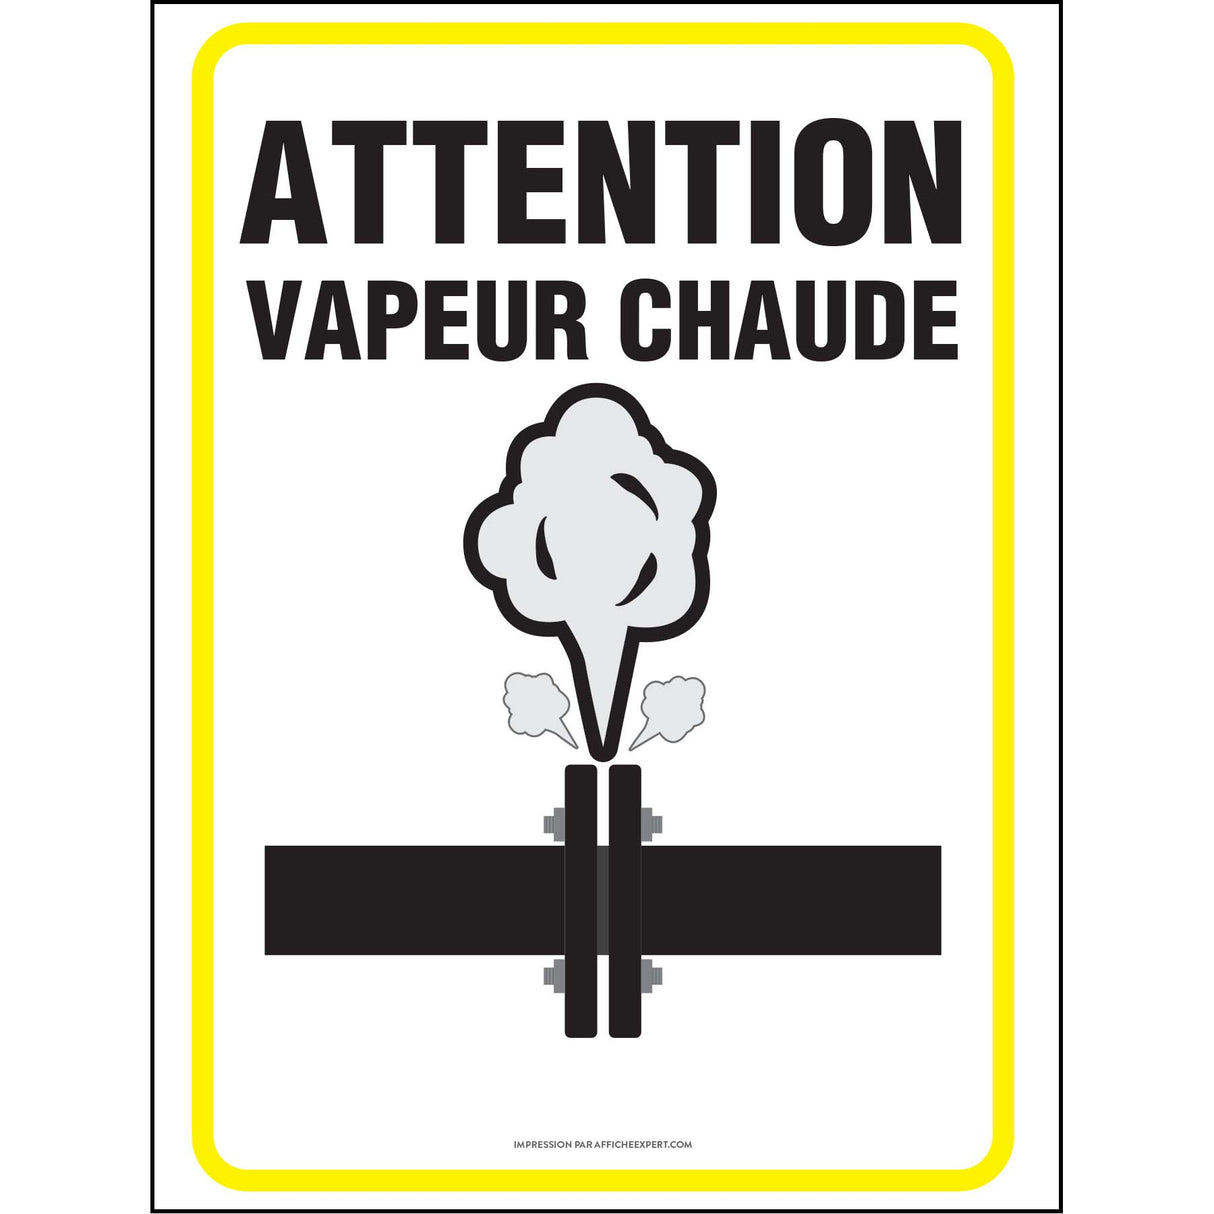 Attention - Vapeur chaude